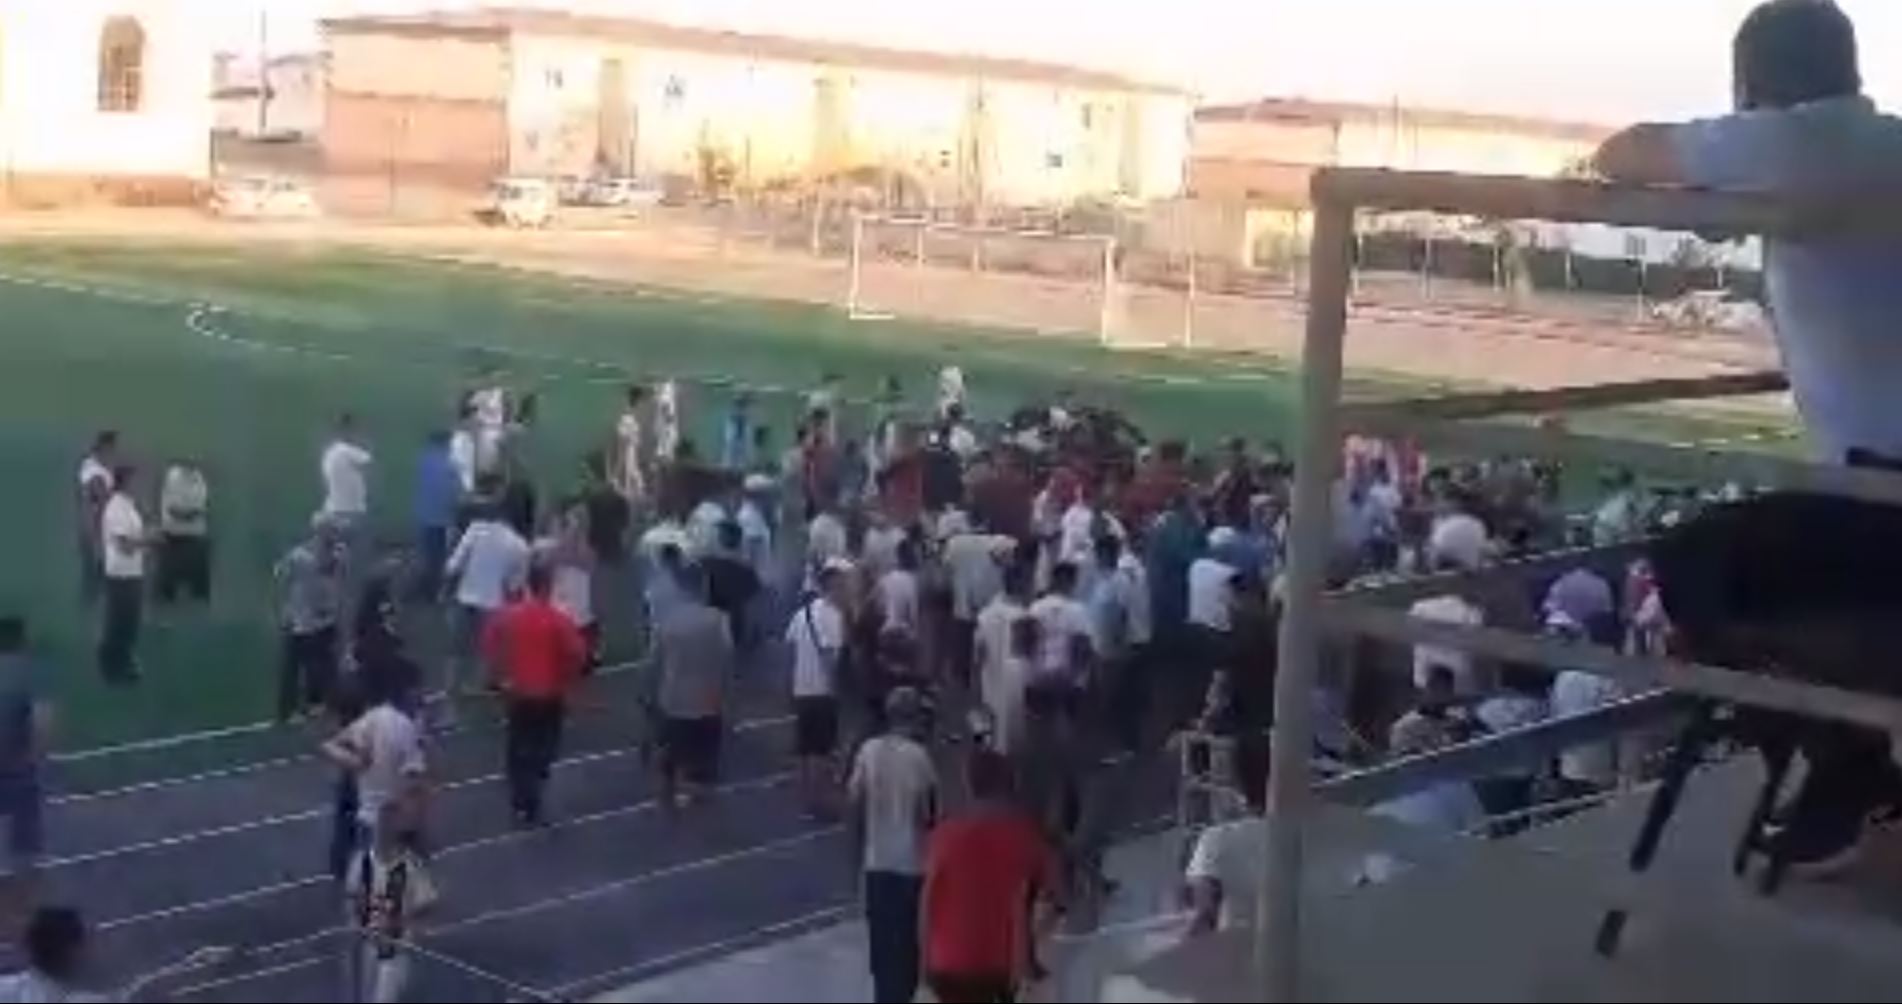 В Муйнаке недовольные болельщики вышли на поле во время футбольного матча